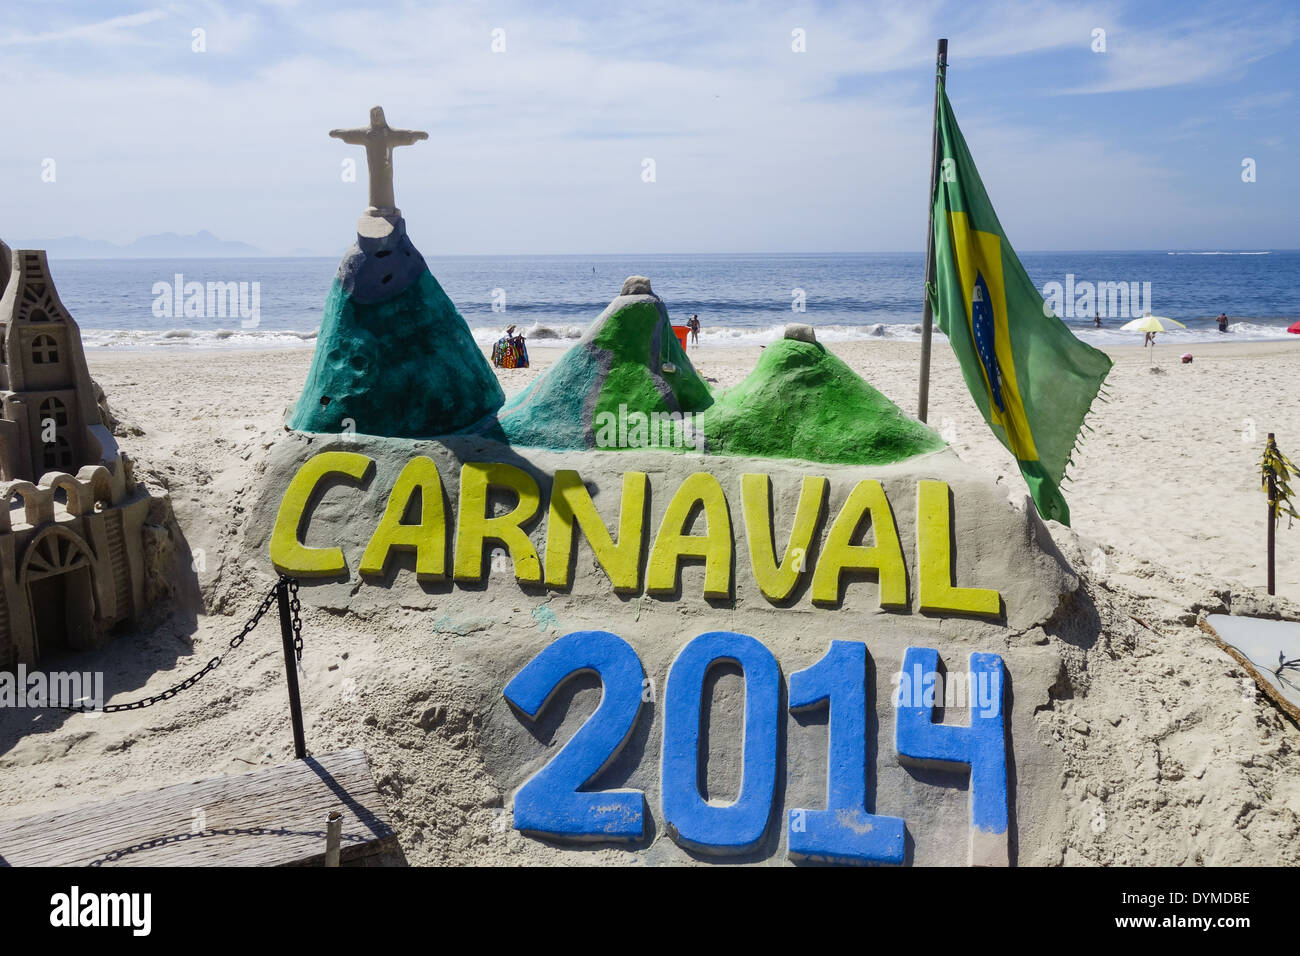 Rio de Janeiro, Copacabana, Carnaval 2014, Brazil Stock Photo